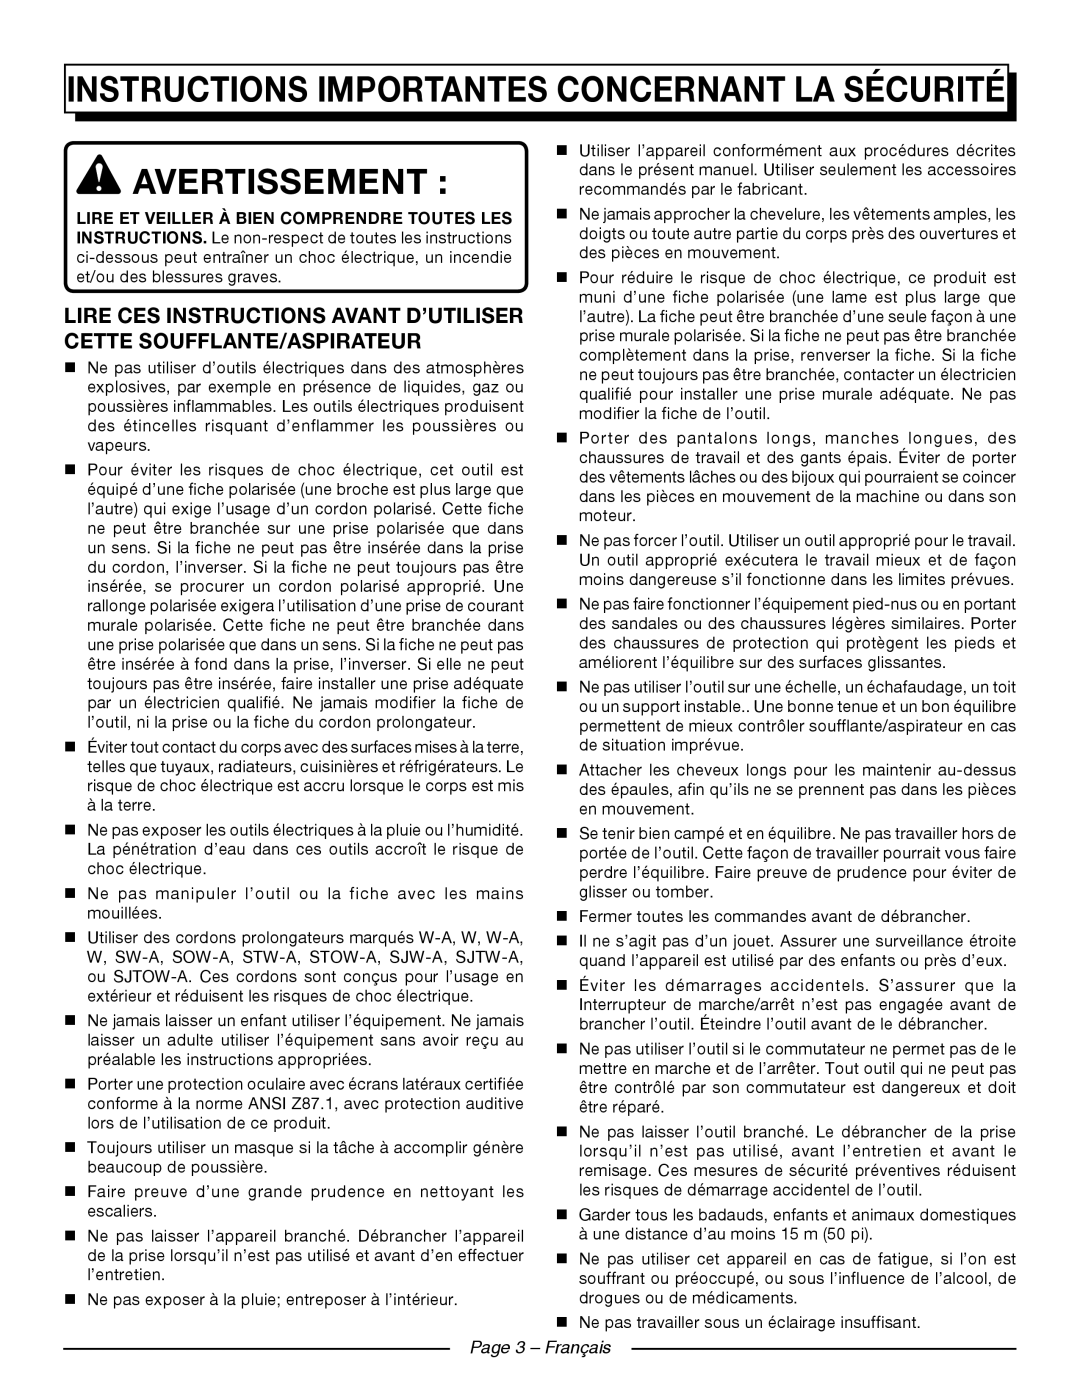 Homelite UT42120 manuel dutilisation Instructions importantes concernant la sécurité, Avertissement, Page 3 - Français 